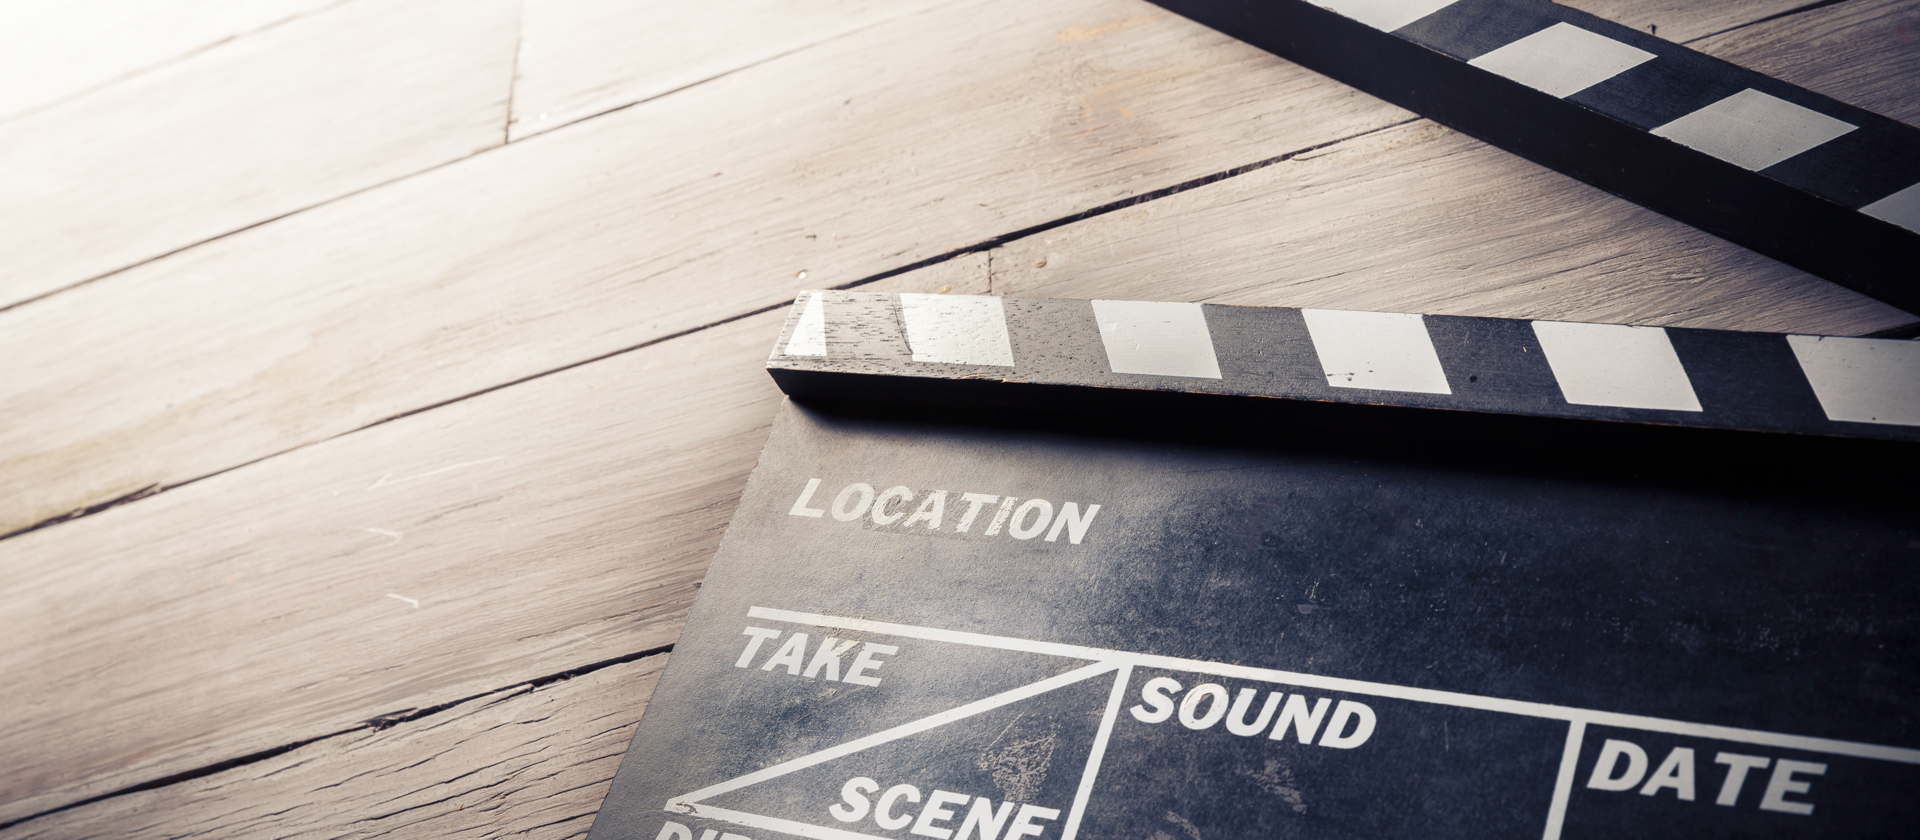 Eine Filmklappe liegt auf einem Parkettboden